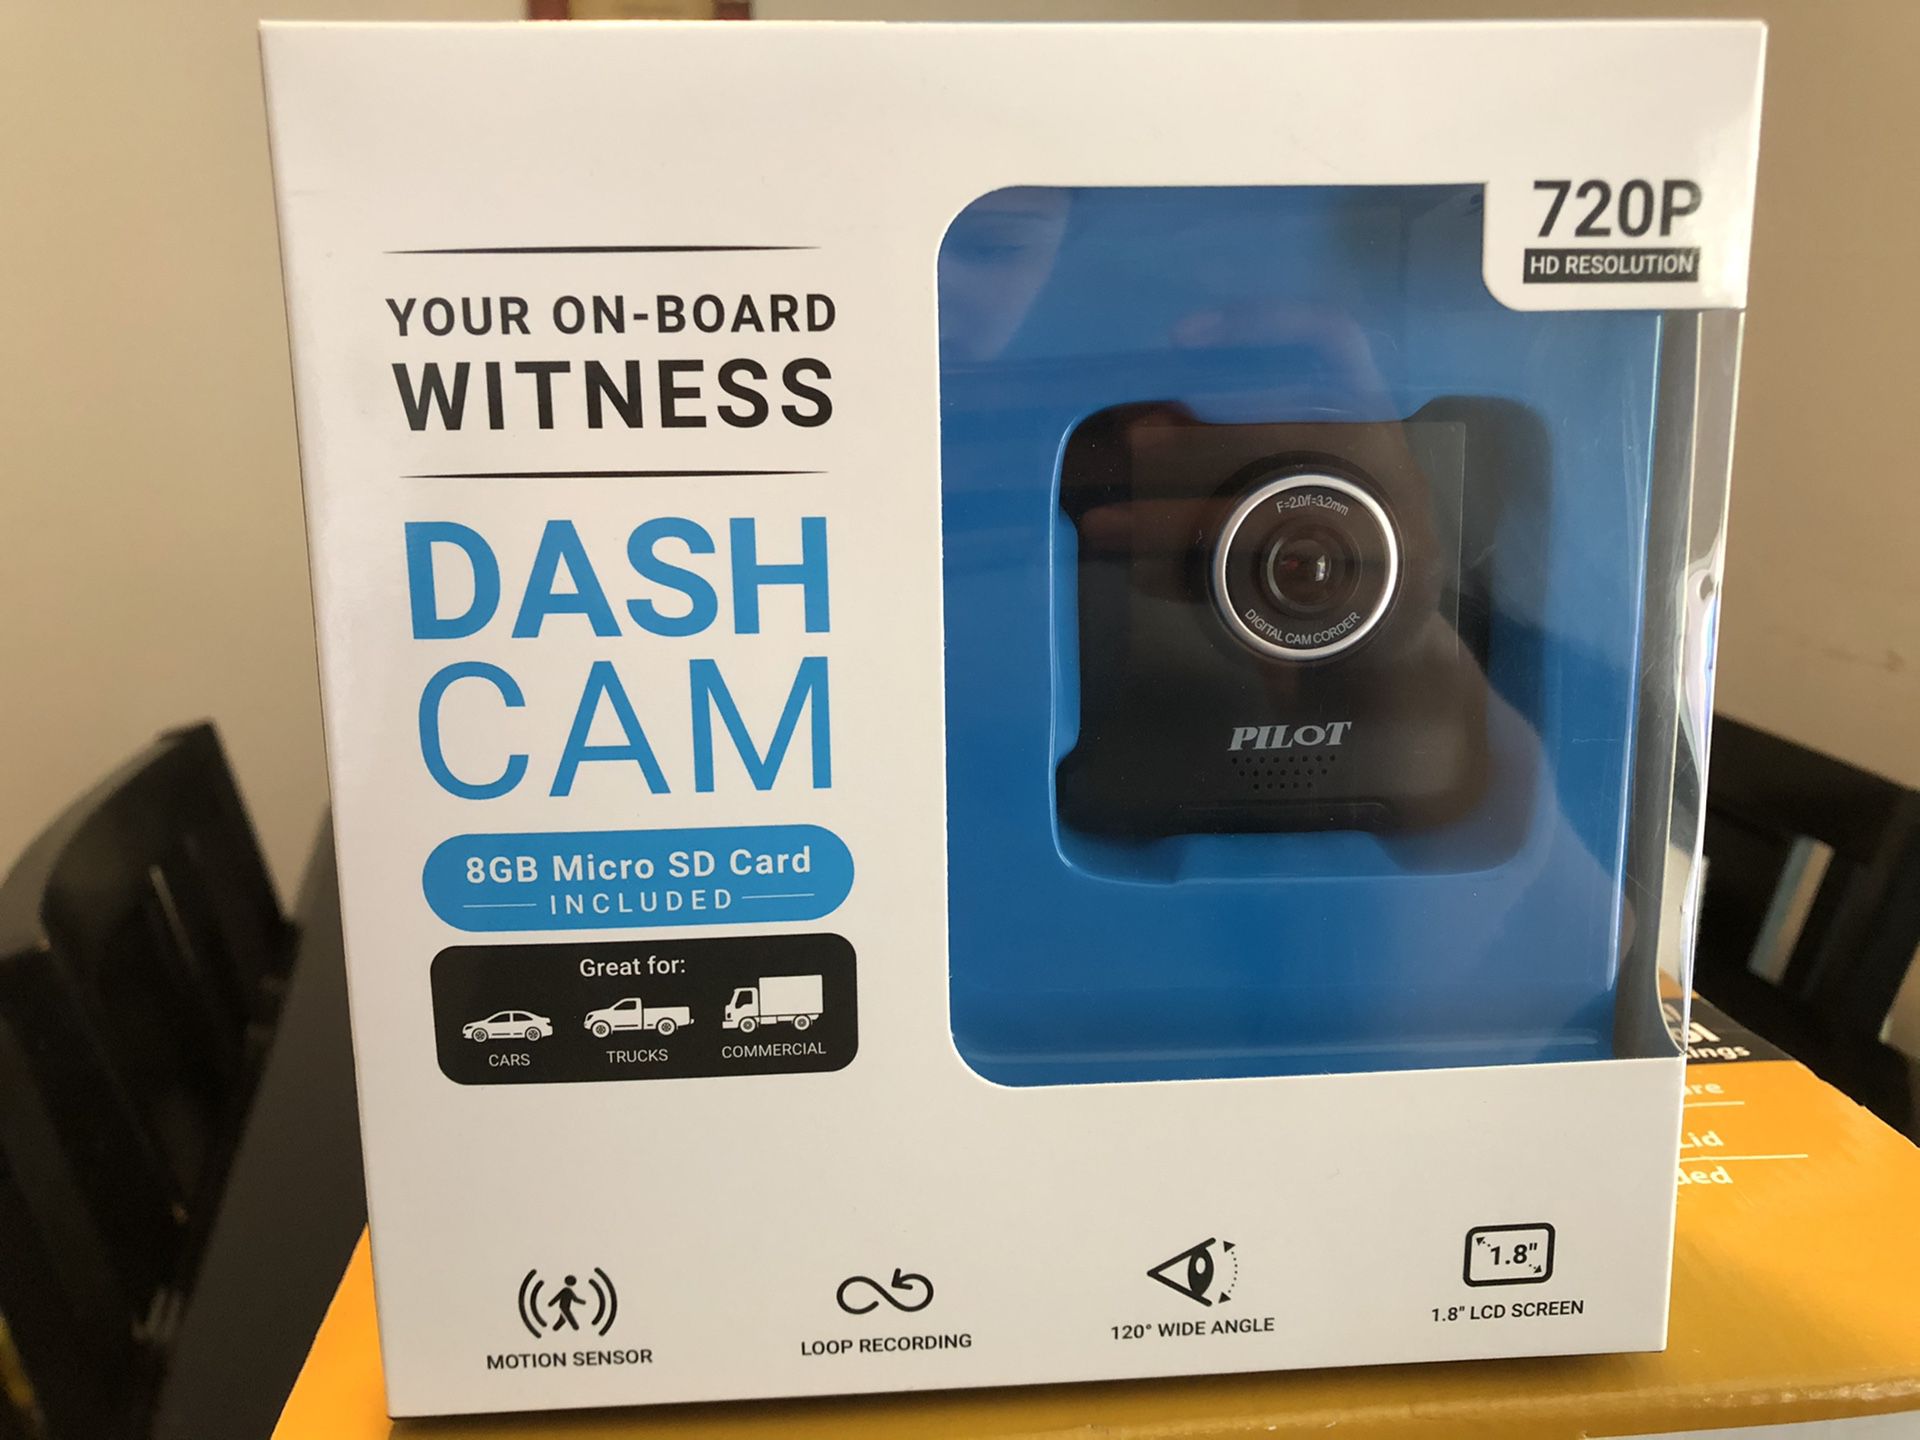 New Dash cam